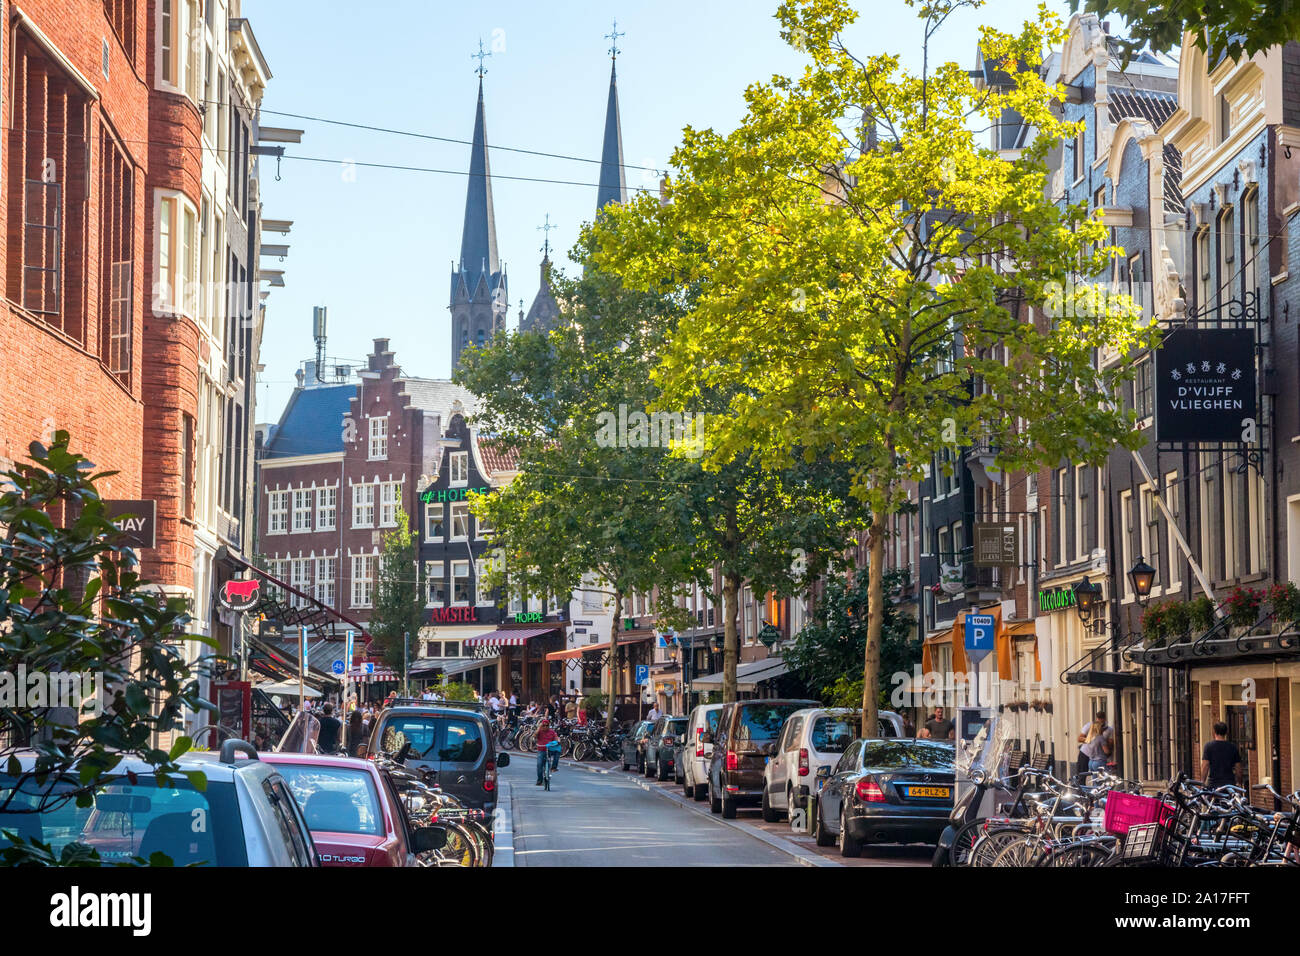 Spuitstraat mit typisch holländischen Häusern, der Verkehr, die geparkten Autos und Fahrräder an einem sonnigen Nachmittag. Amsterdam, Niederlande. Stockfoto